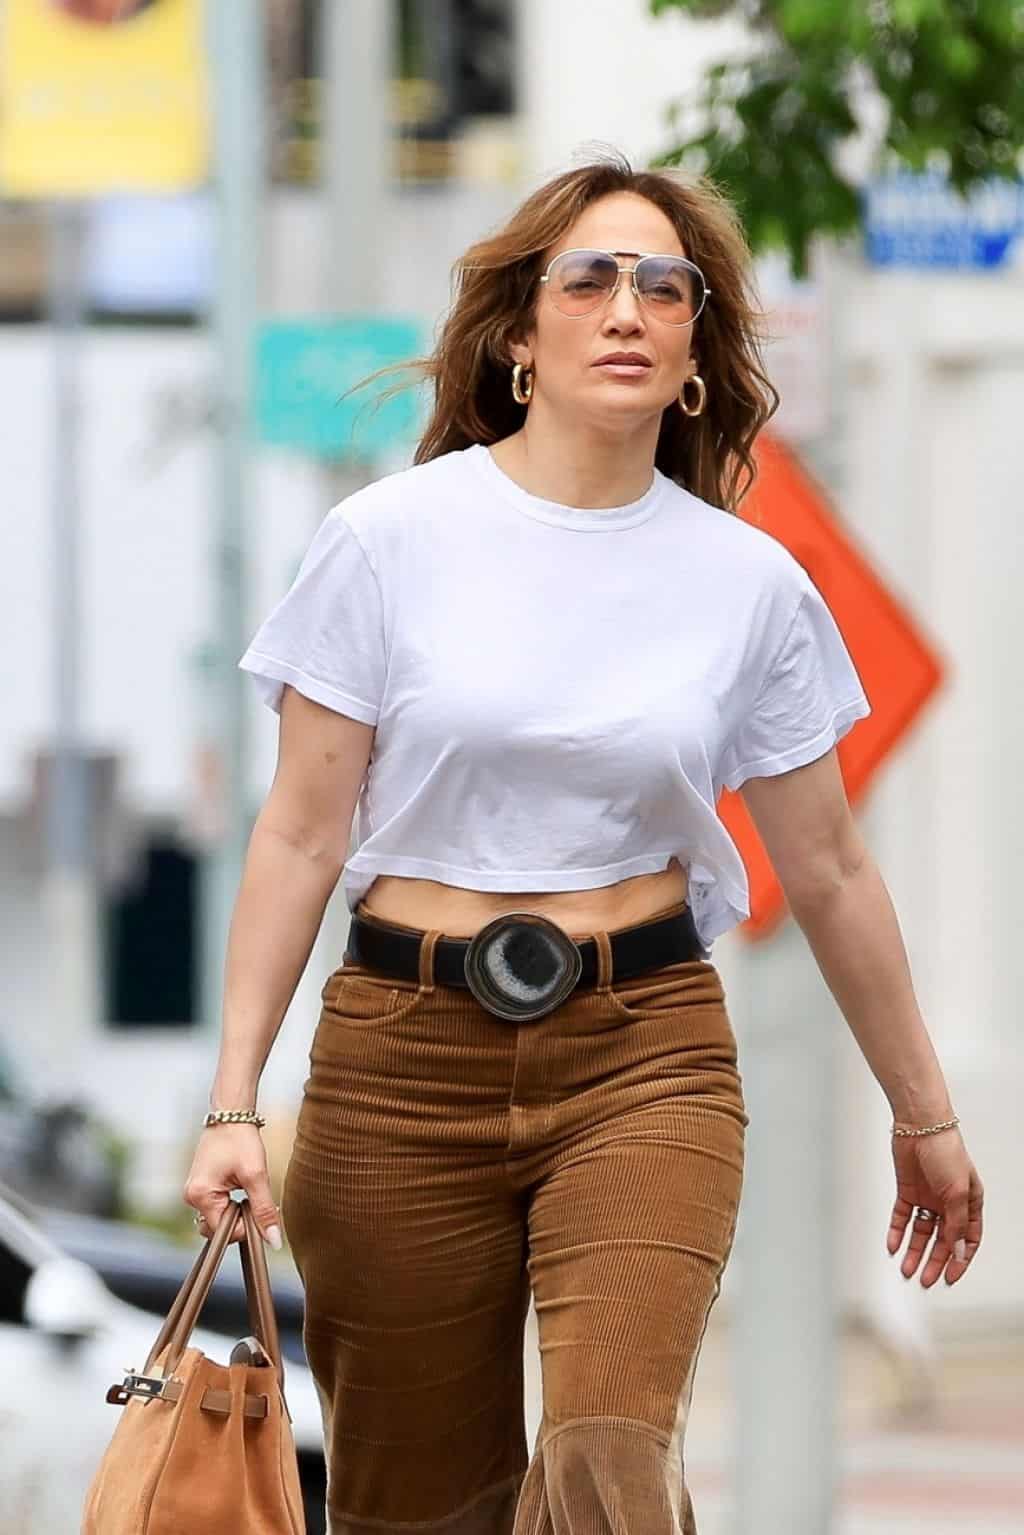 Jennifer Lopez Rocks 70's Style in Brown Corduroy Jeans as She Runs Errands